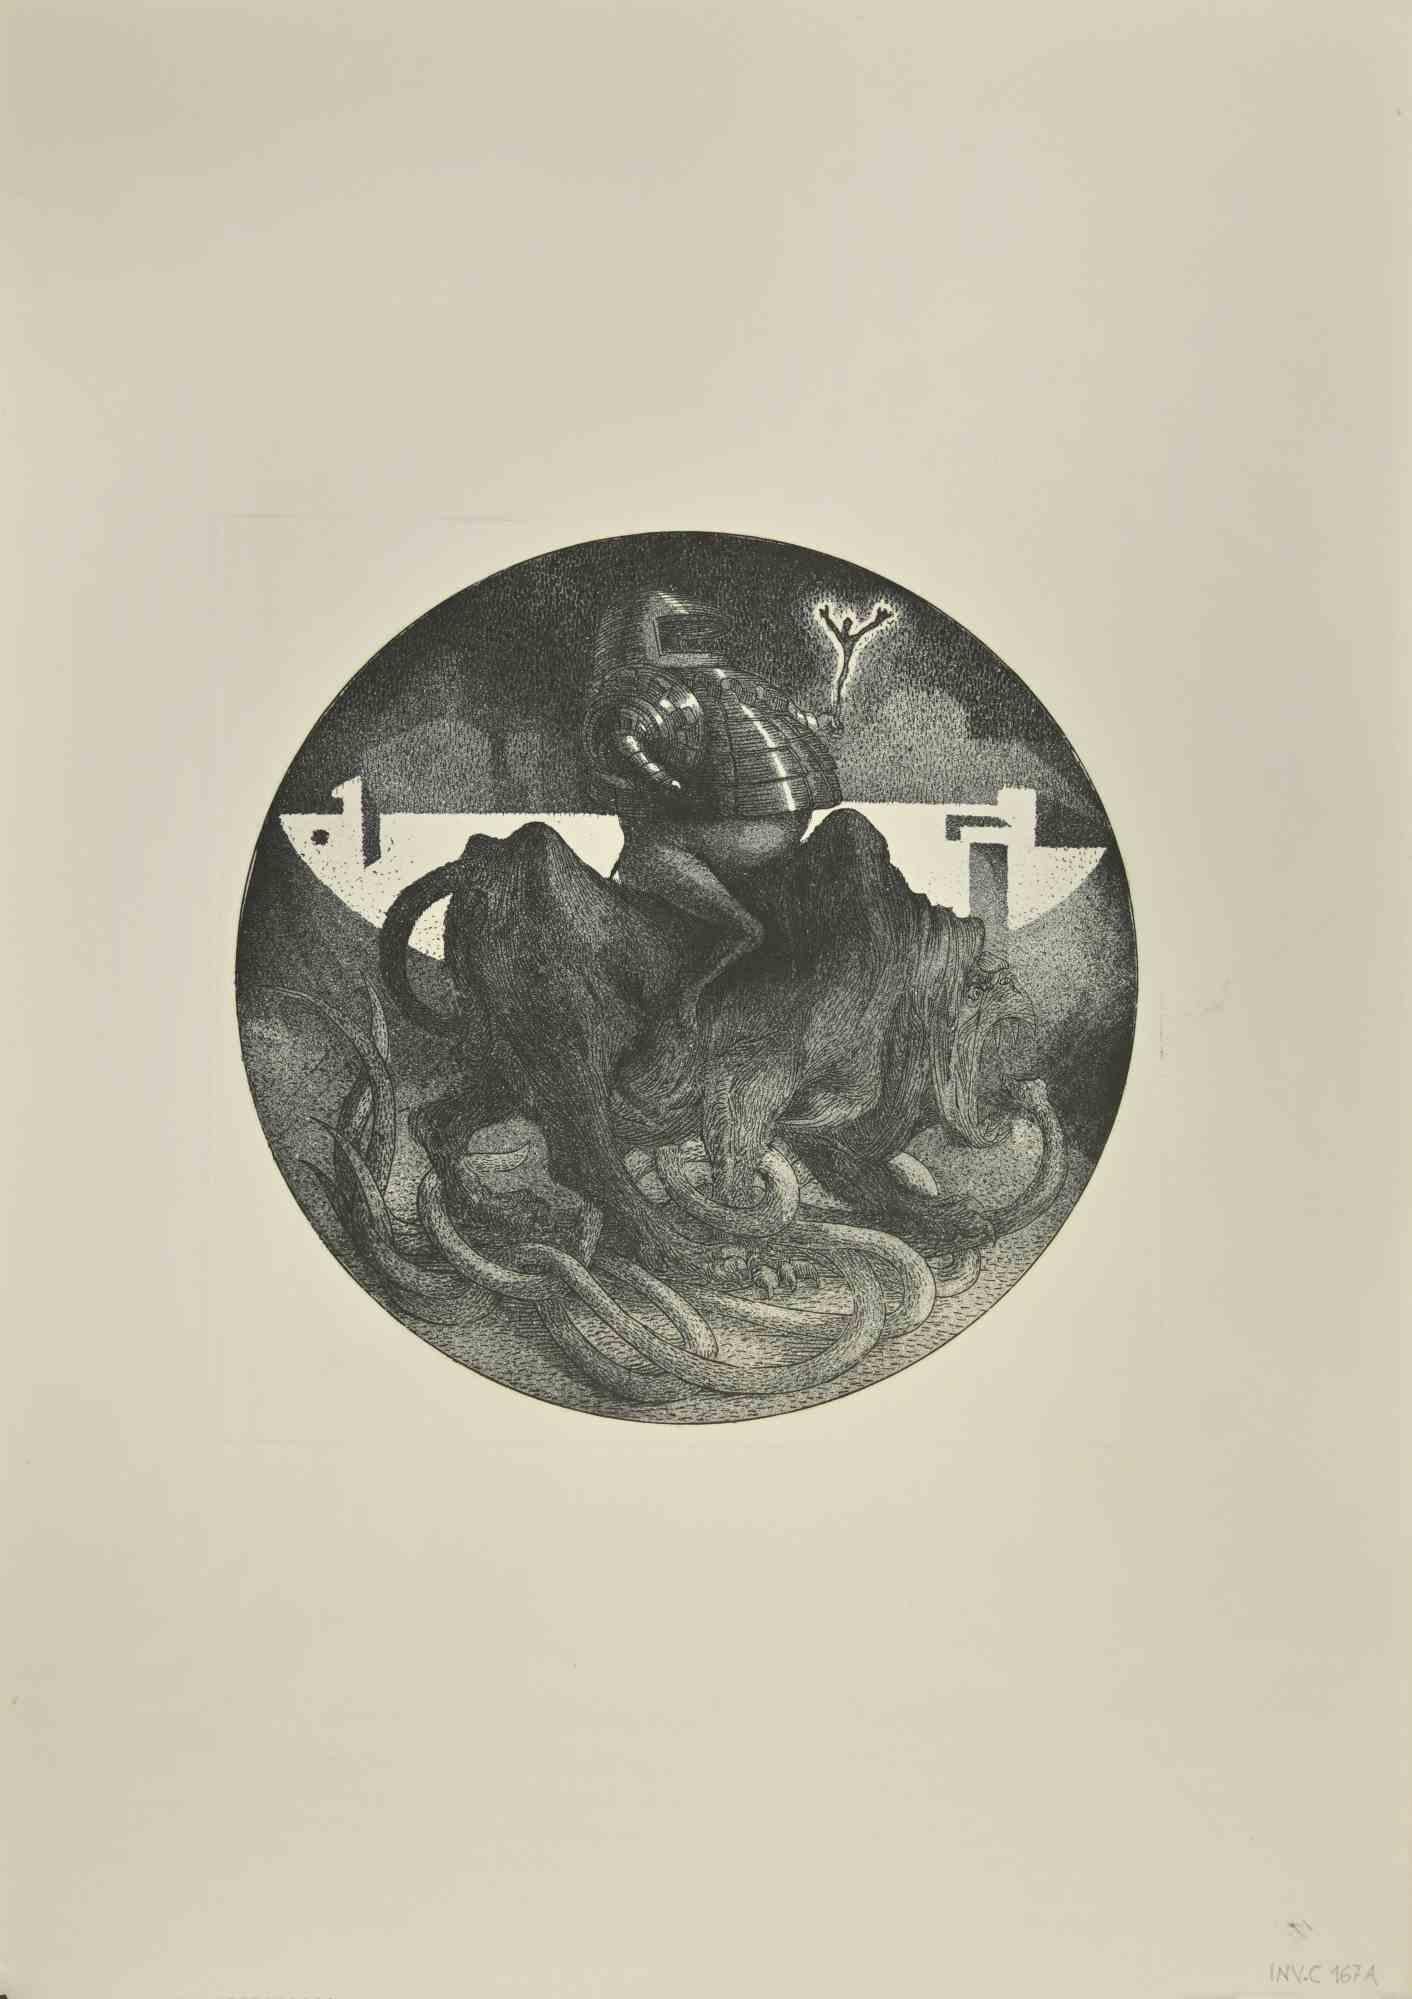 Bird est une œuvre d'art contemporain réalisée  en 1972  par l'artiste contemporain italien  Leo Guida  (1992 - 2017).

Gravure originale en noir et blanc sur carton de couleur ivoire.

Signé à la main, daté et numéroté.

Dans cette œuvre, un oiseau